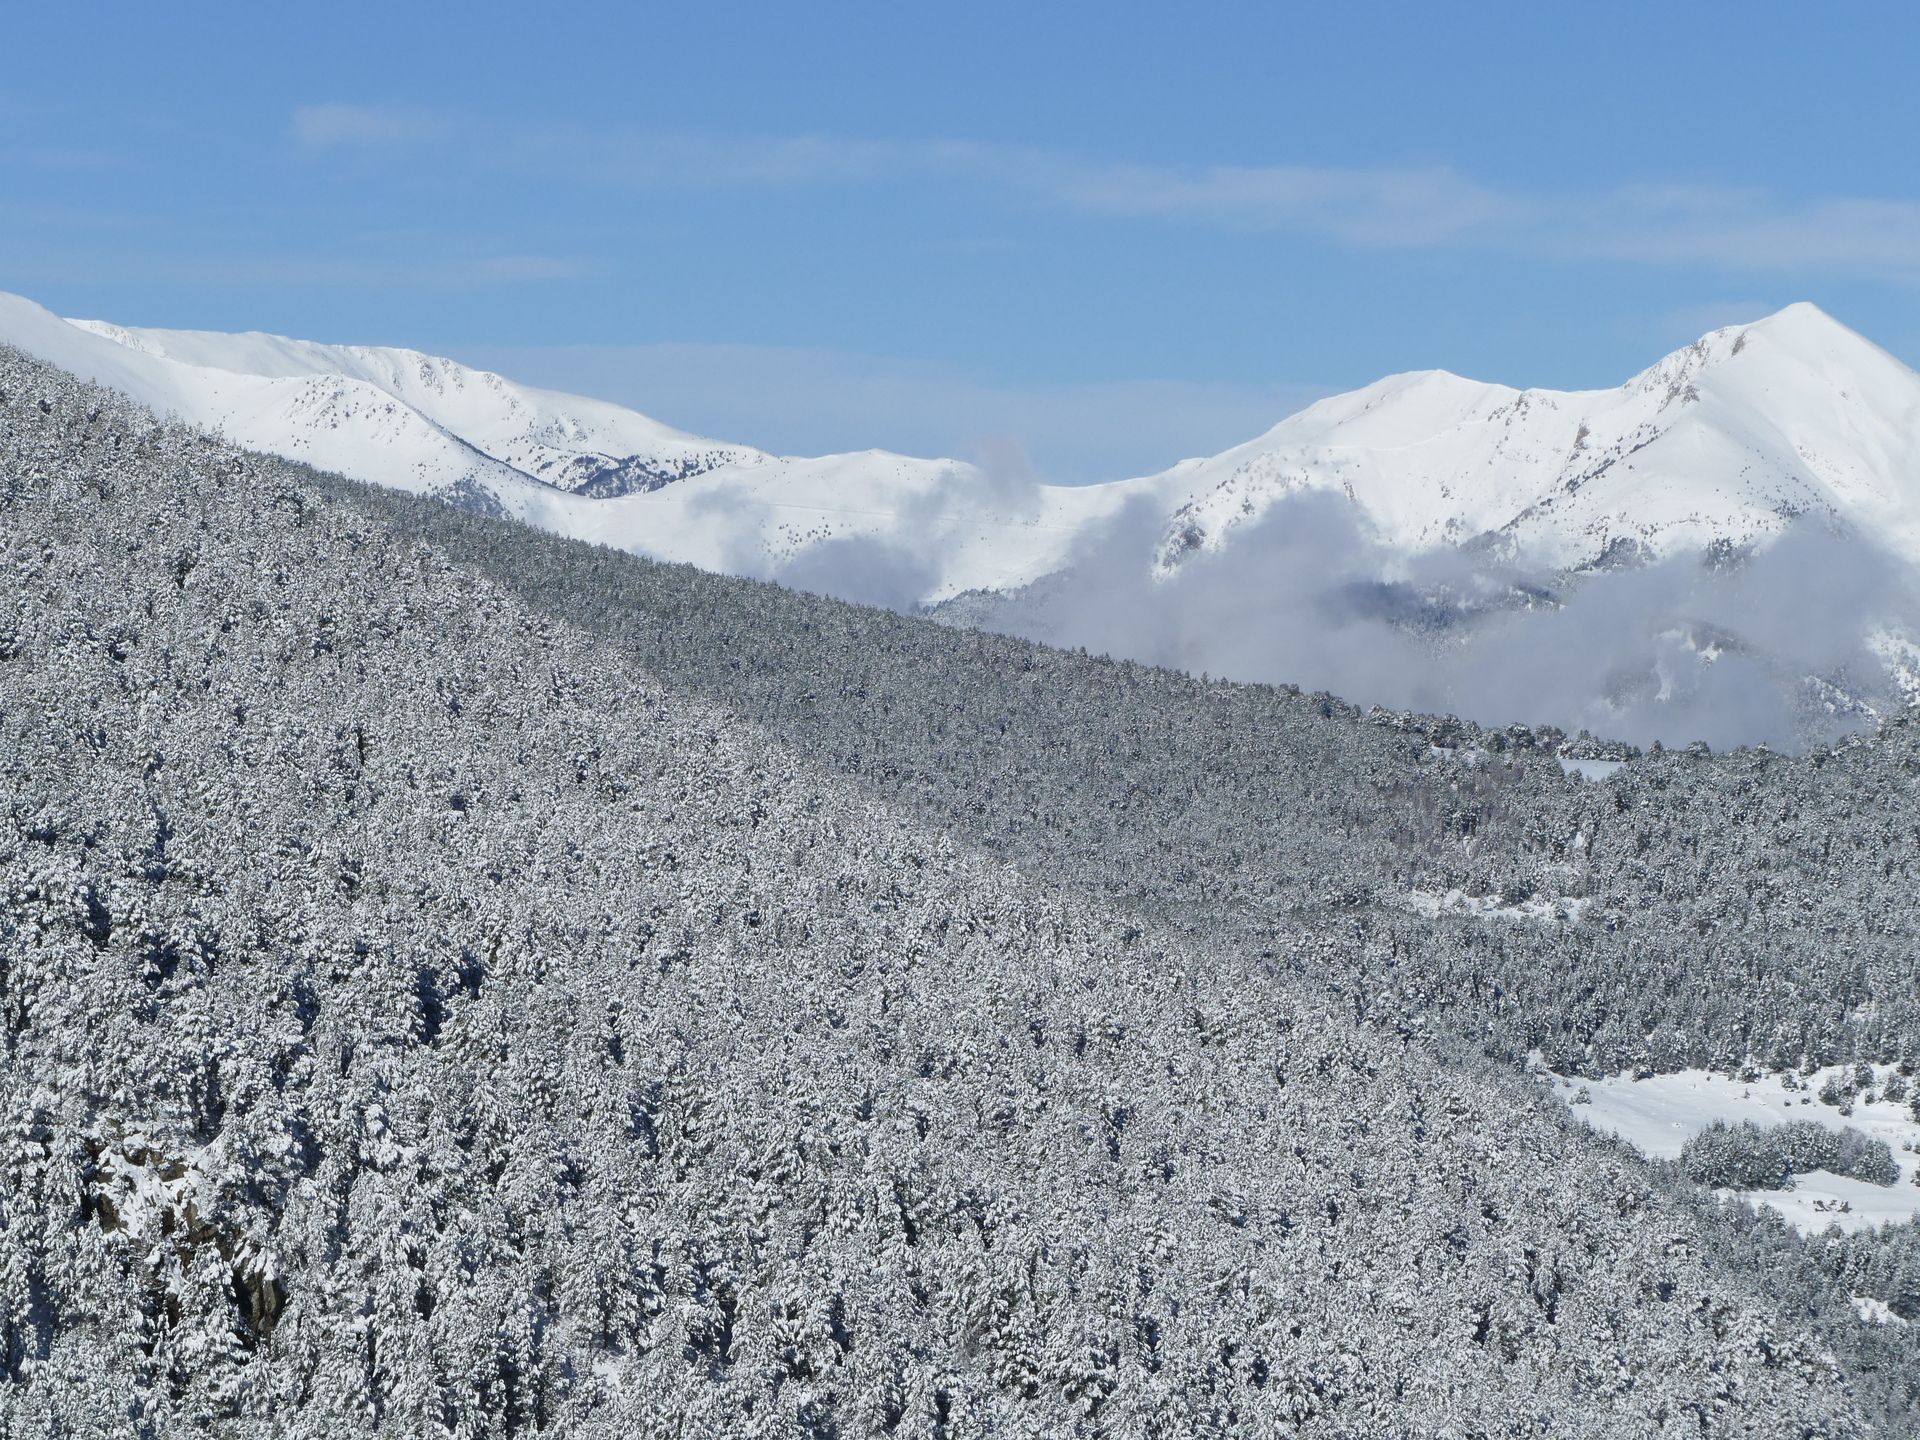 Grandvalira Resorts afronta una buena recta final de su temporada de esquí